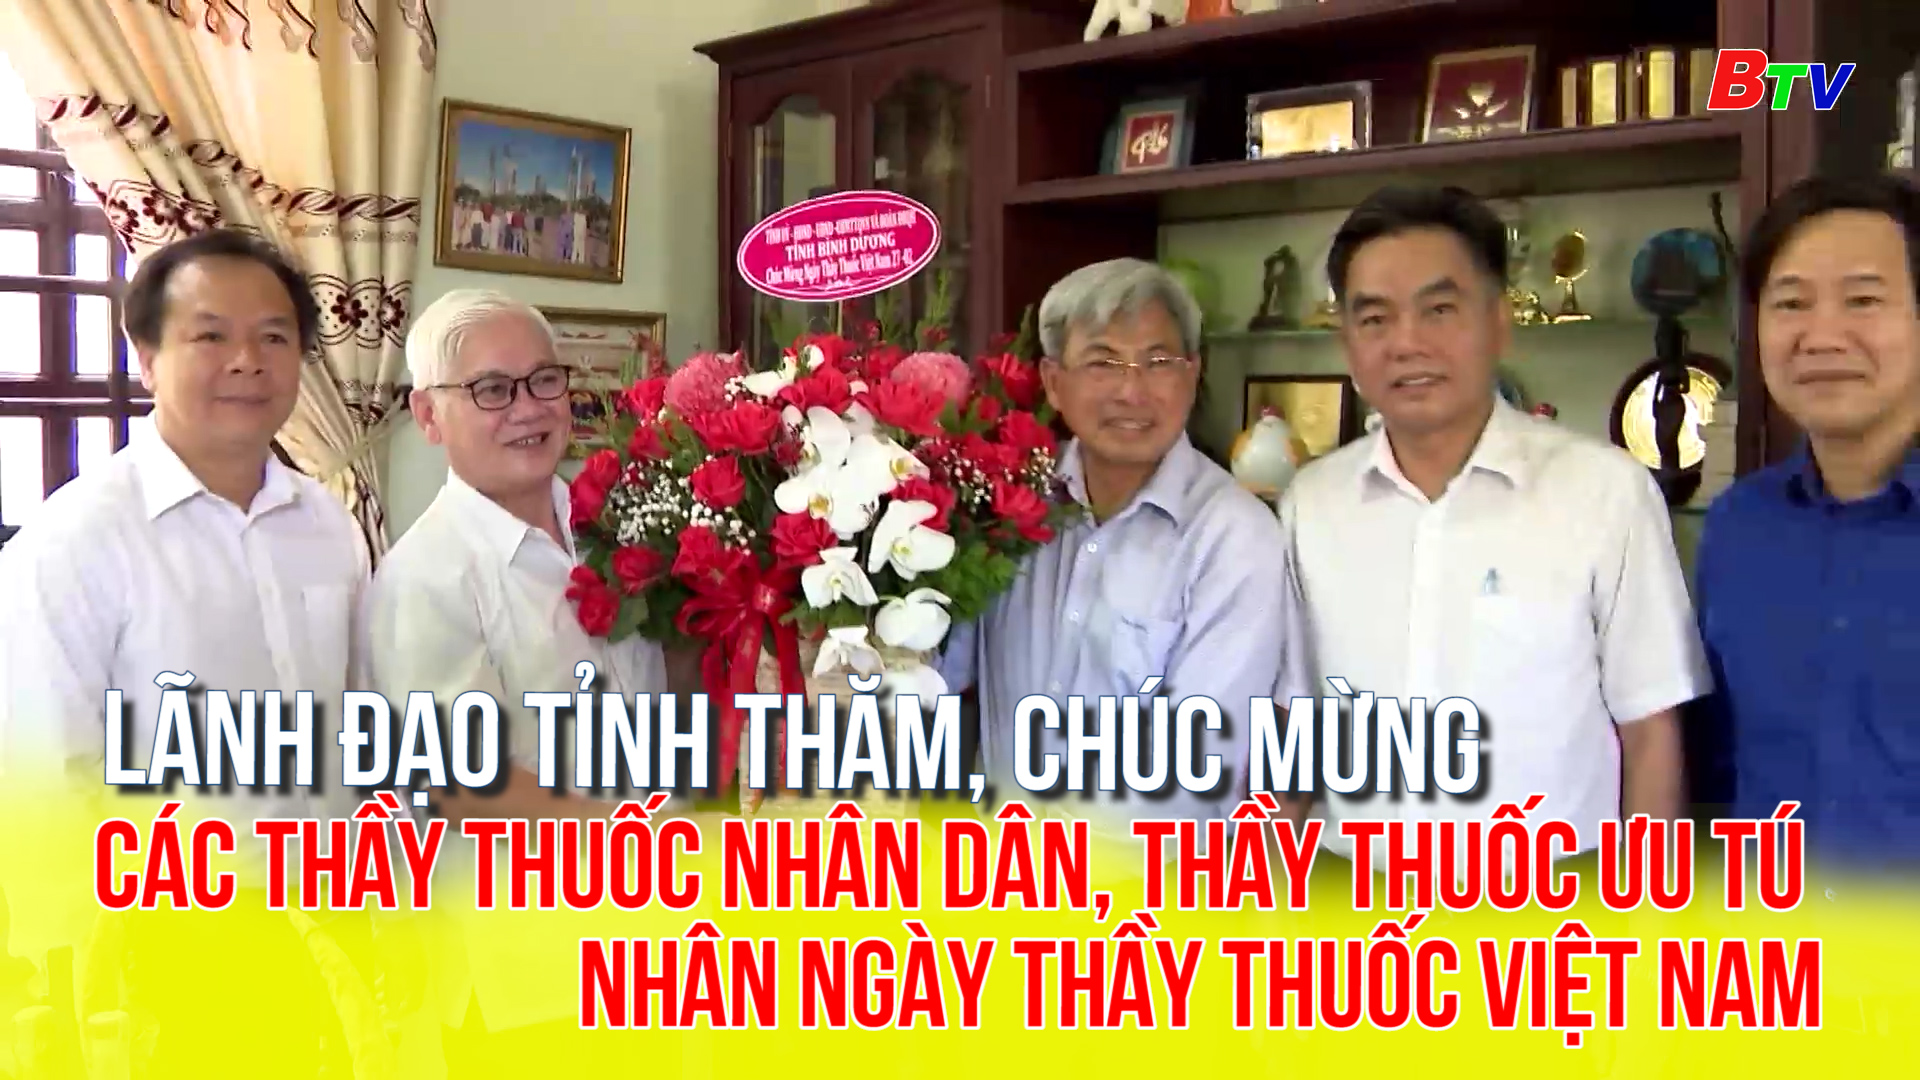 Lãnh đạo tỉnh thăm, chúc mừng các Thầy thuốc nhân dân, Thầy thuốc ưu tú nhân ngày Thầy thuốc Việt Nam